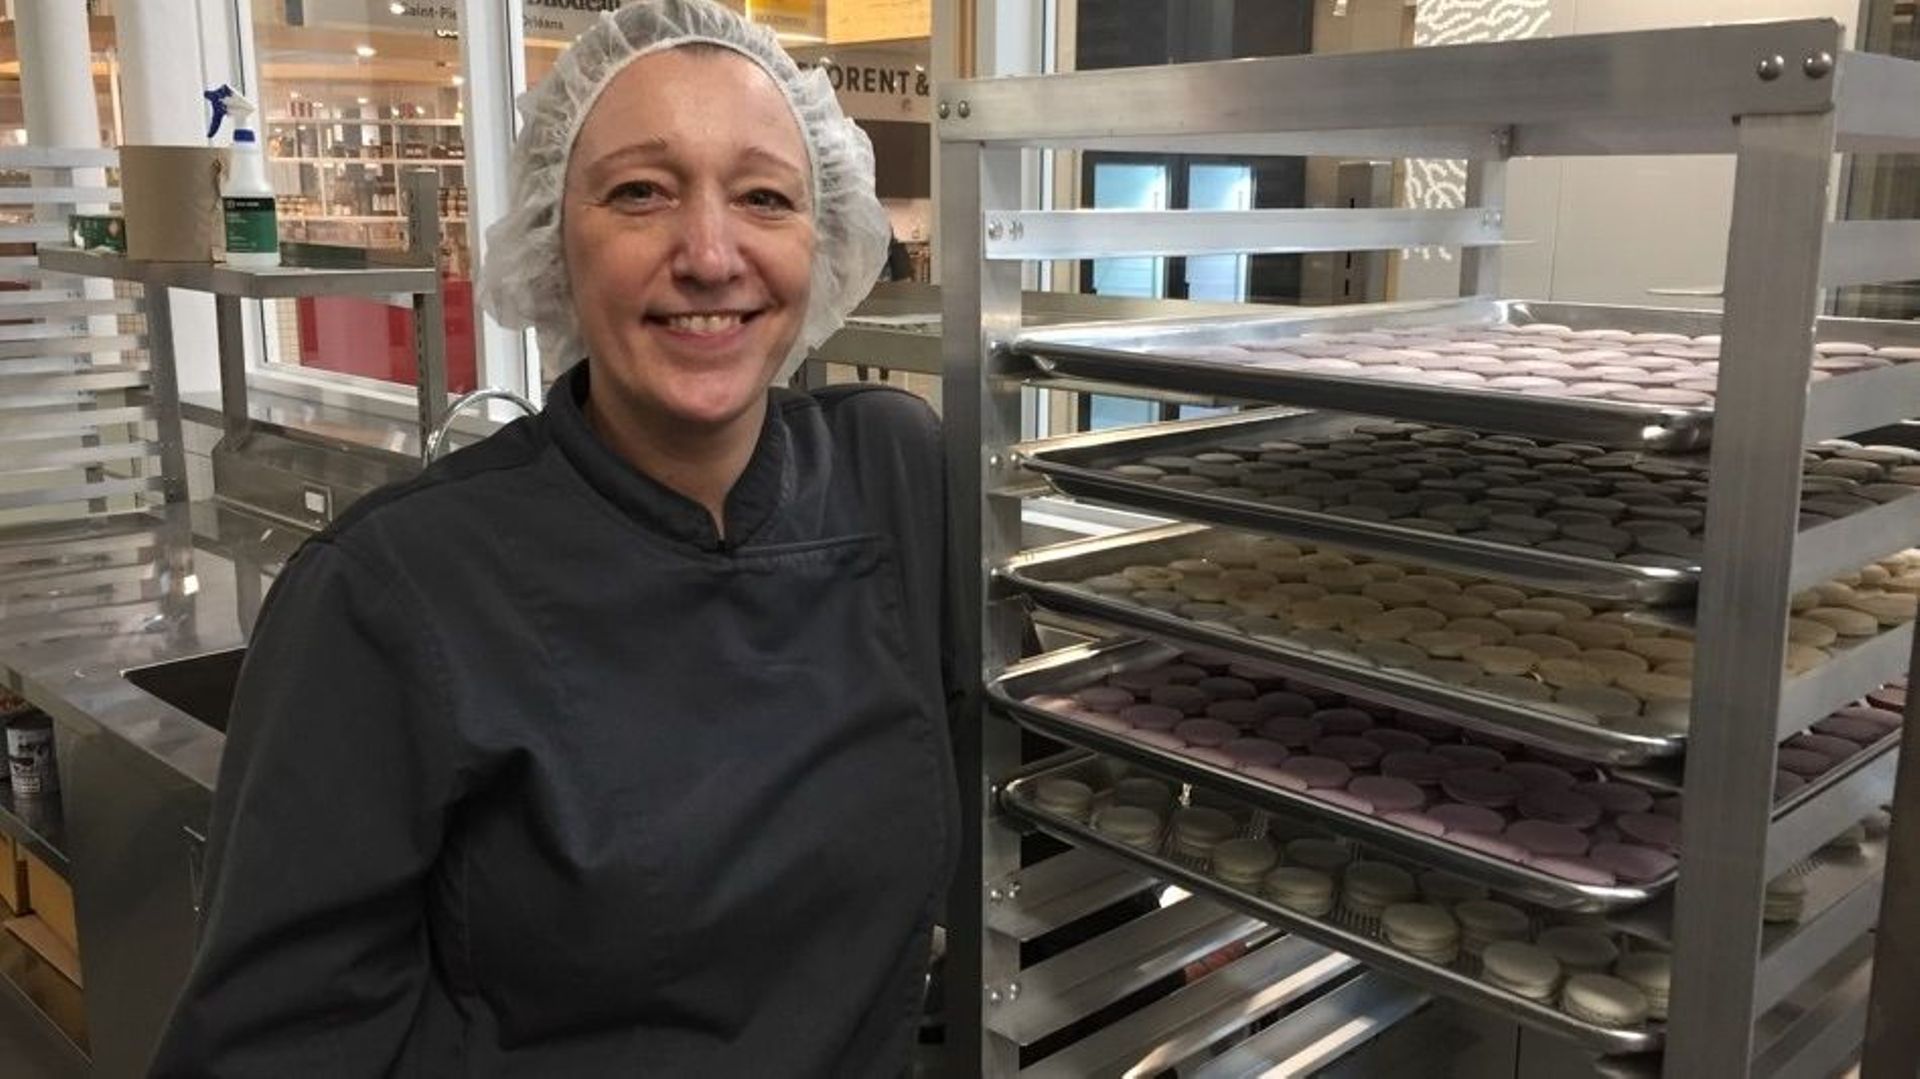 La Belge Sophie Boullard vit au Québec. Cette entrepreneure produit des macarons, elle a beaucoup de succès mais craint que la pénurie de main d’œuvre n’affecte son développement.